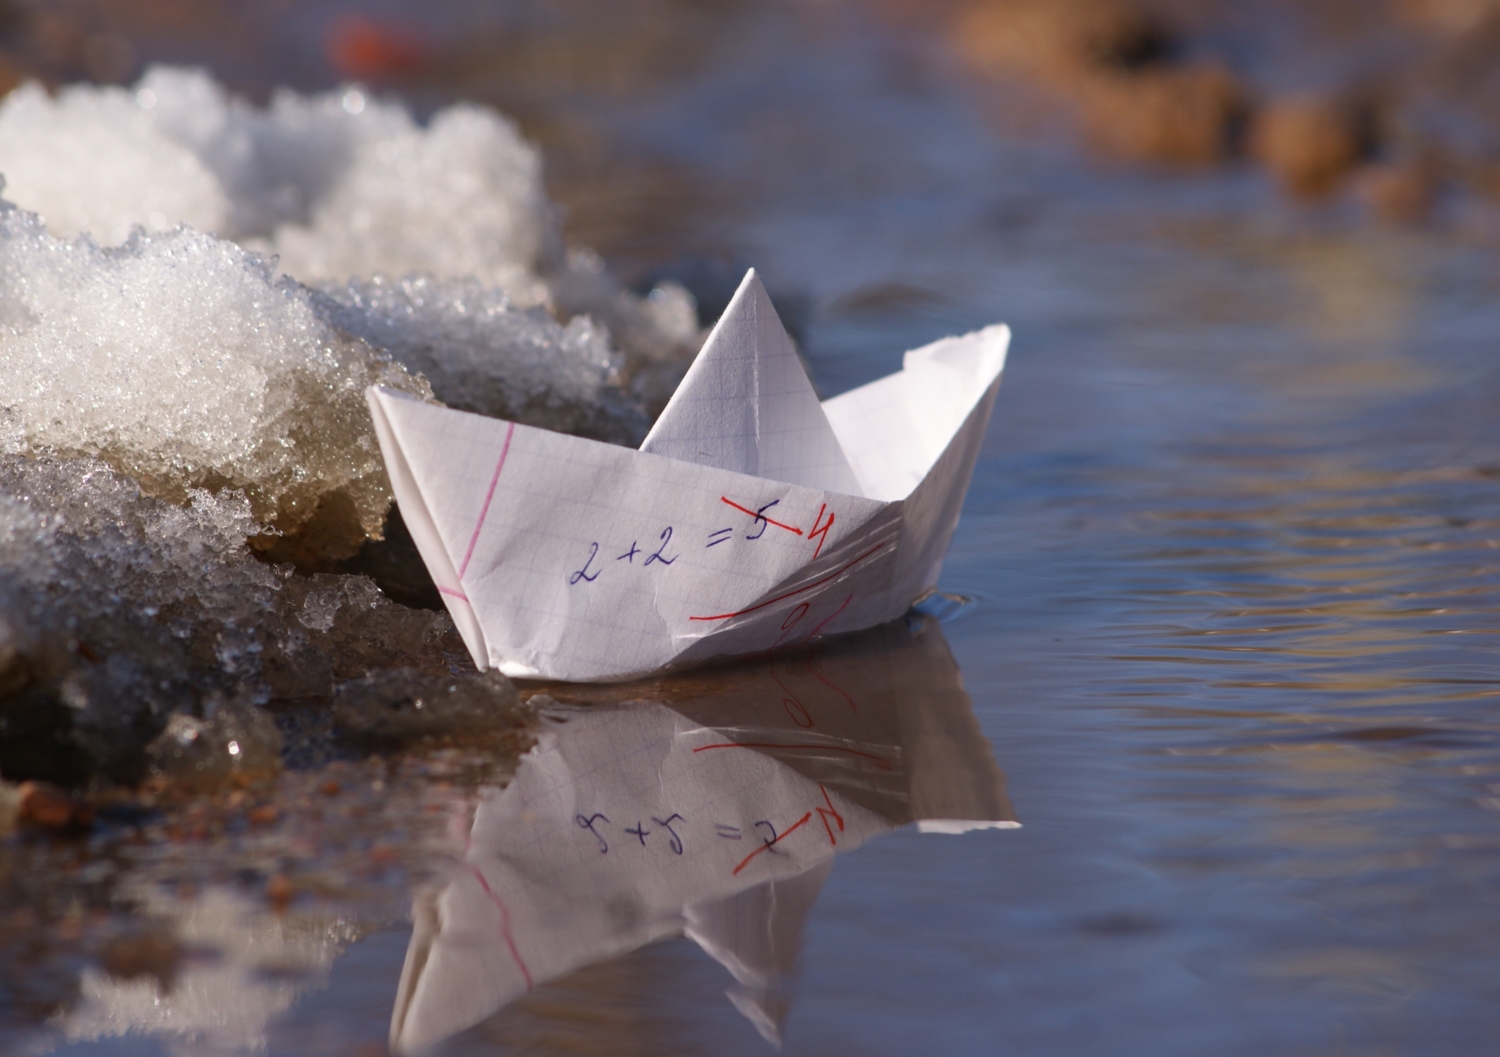 Кораблик из бумаги я по ручью пустил. Бумажный кораблик. Бумажный кораблик в ручейке. Бумажный корабль.